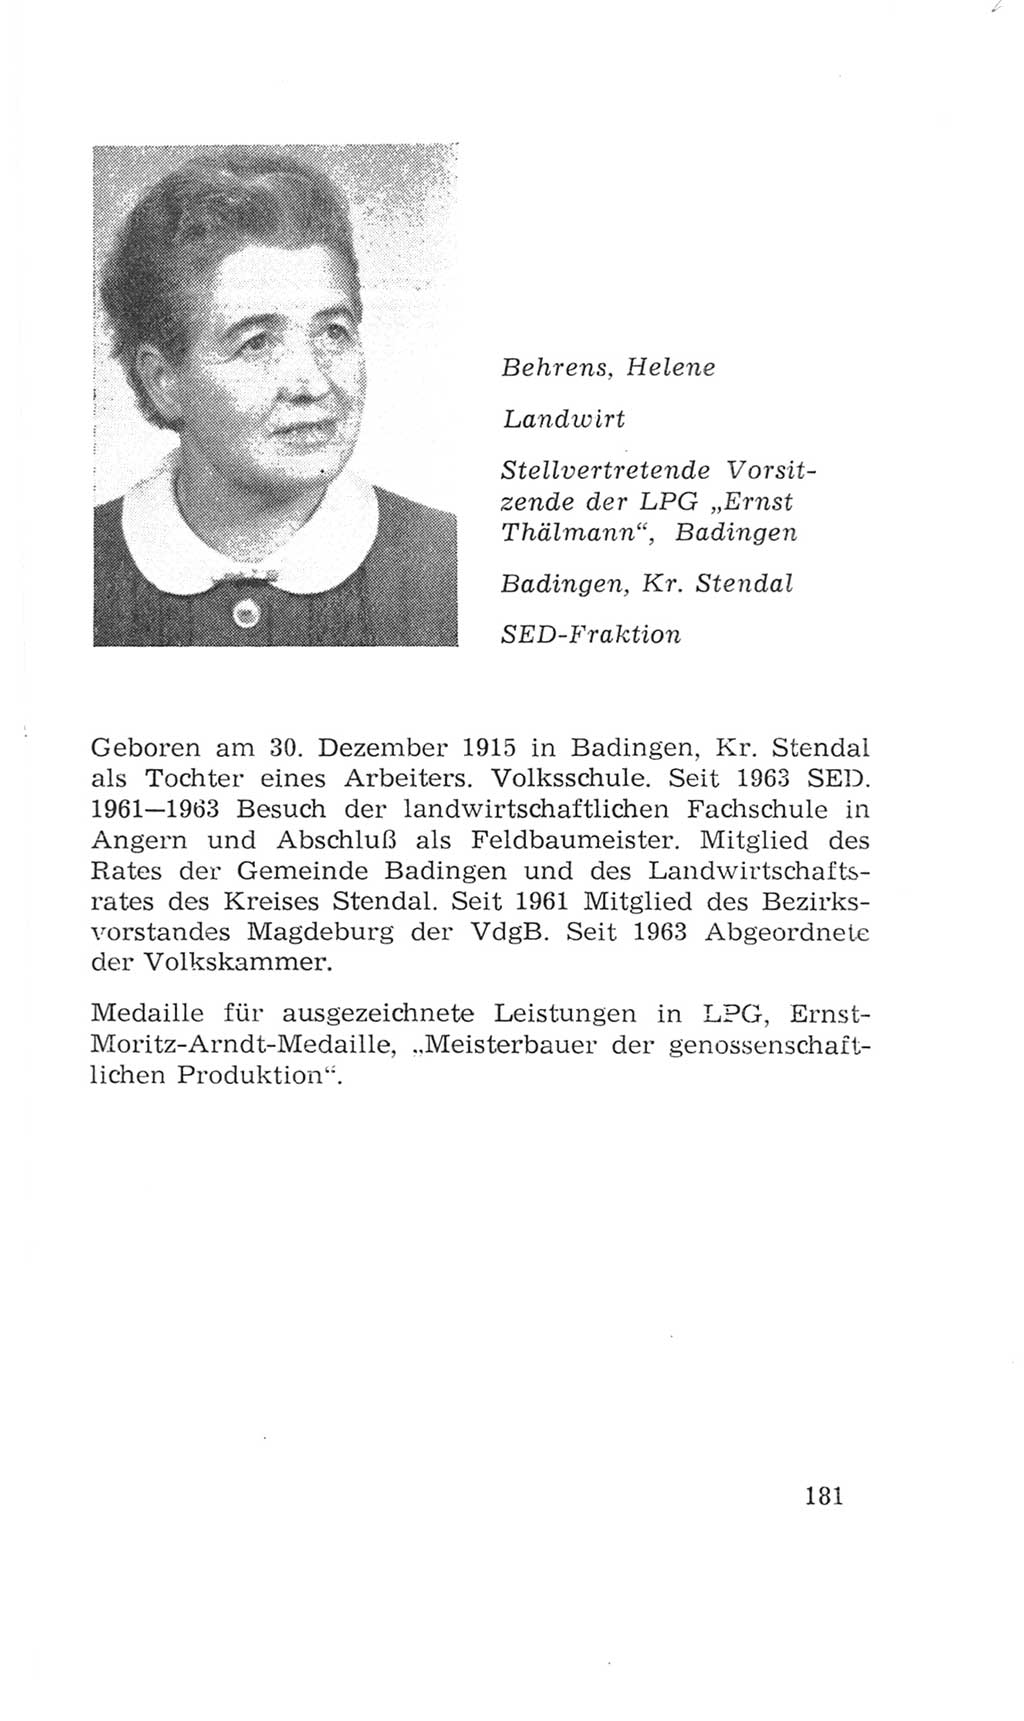 Volkskammer (VK) der Deutschen Demokratischen Republik (DDR), 4. Wahlperiode 1963-1967, Seite 181 (VK. DDR 4. WP. 1963-1967, S. 181)